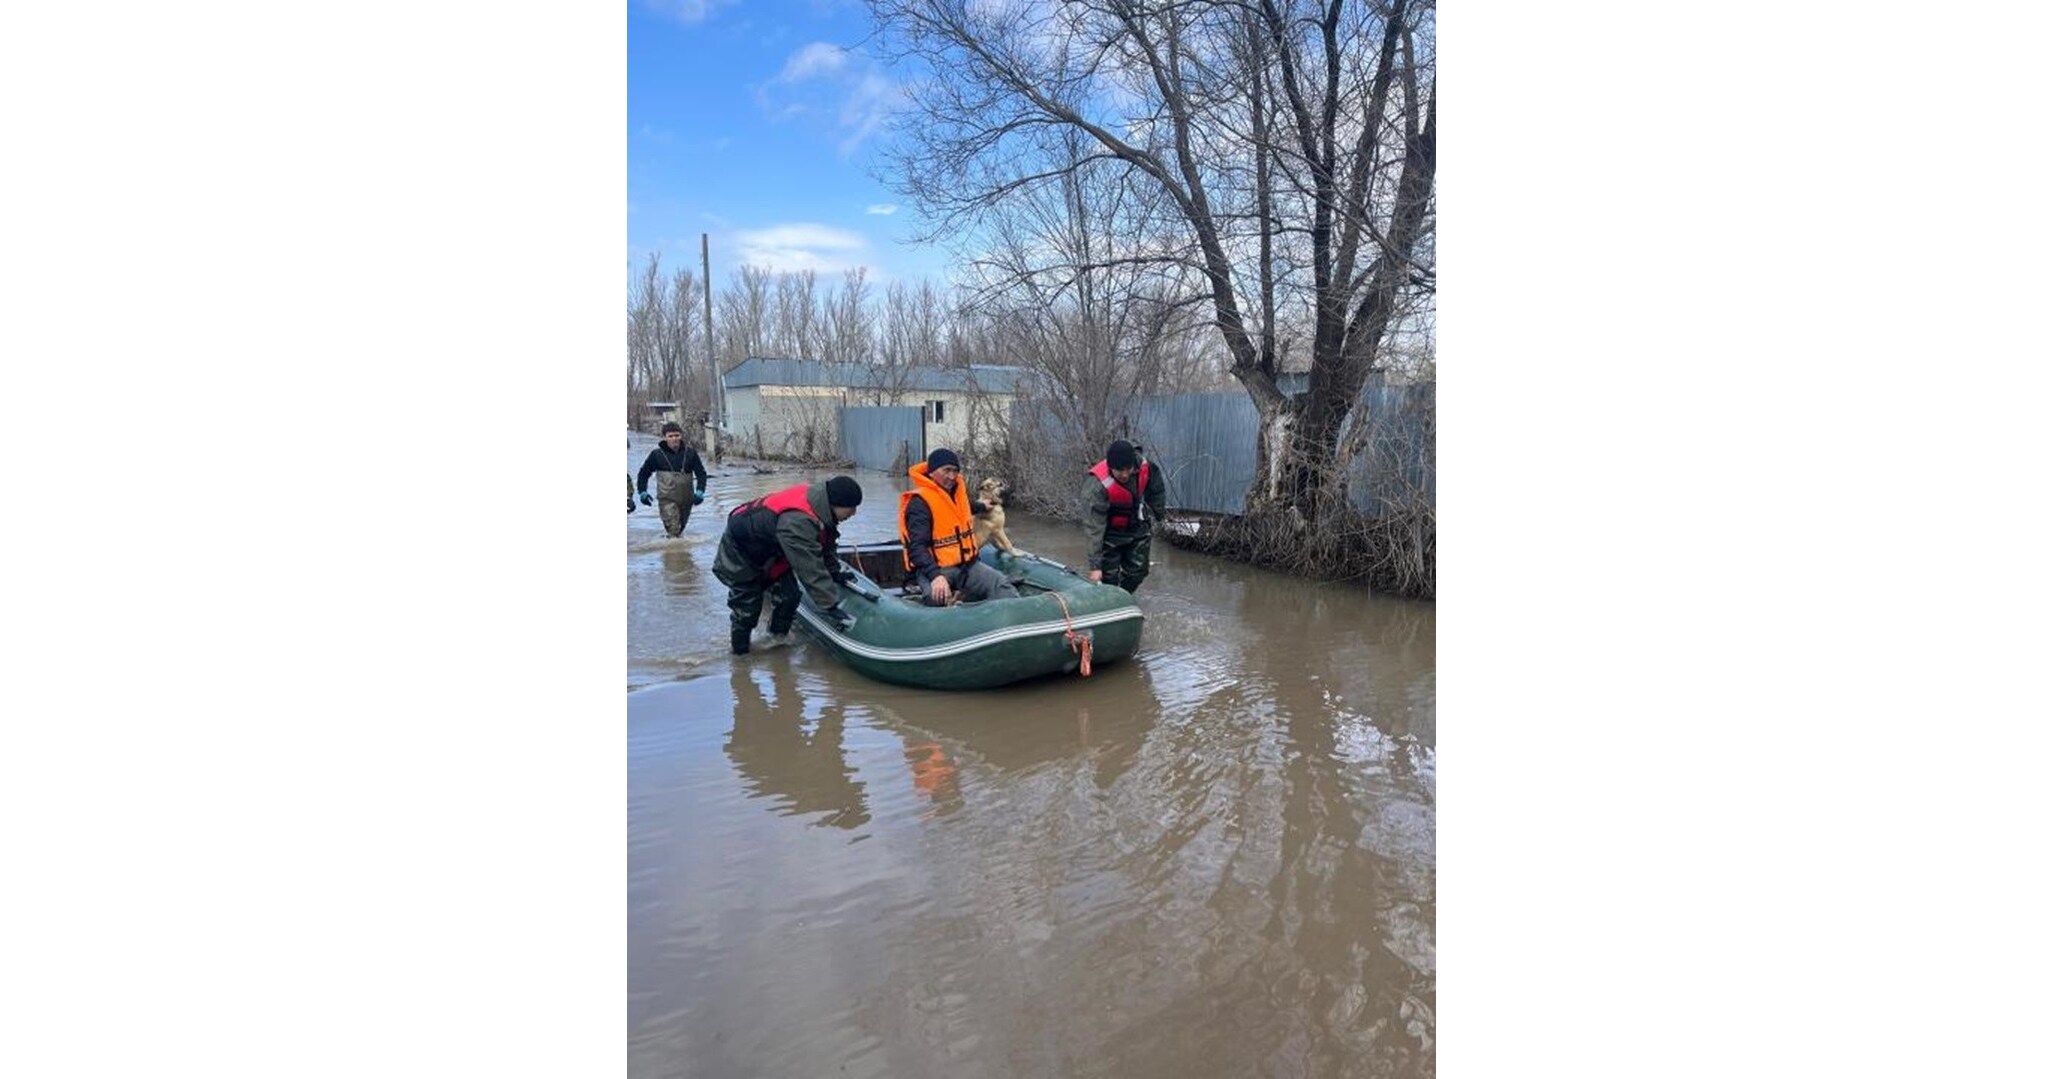 Bulat Utemuratov集团捐赠约3000万美元用于支持洪灾后的恢复工作